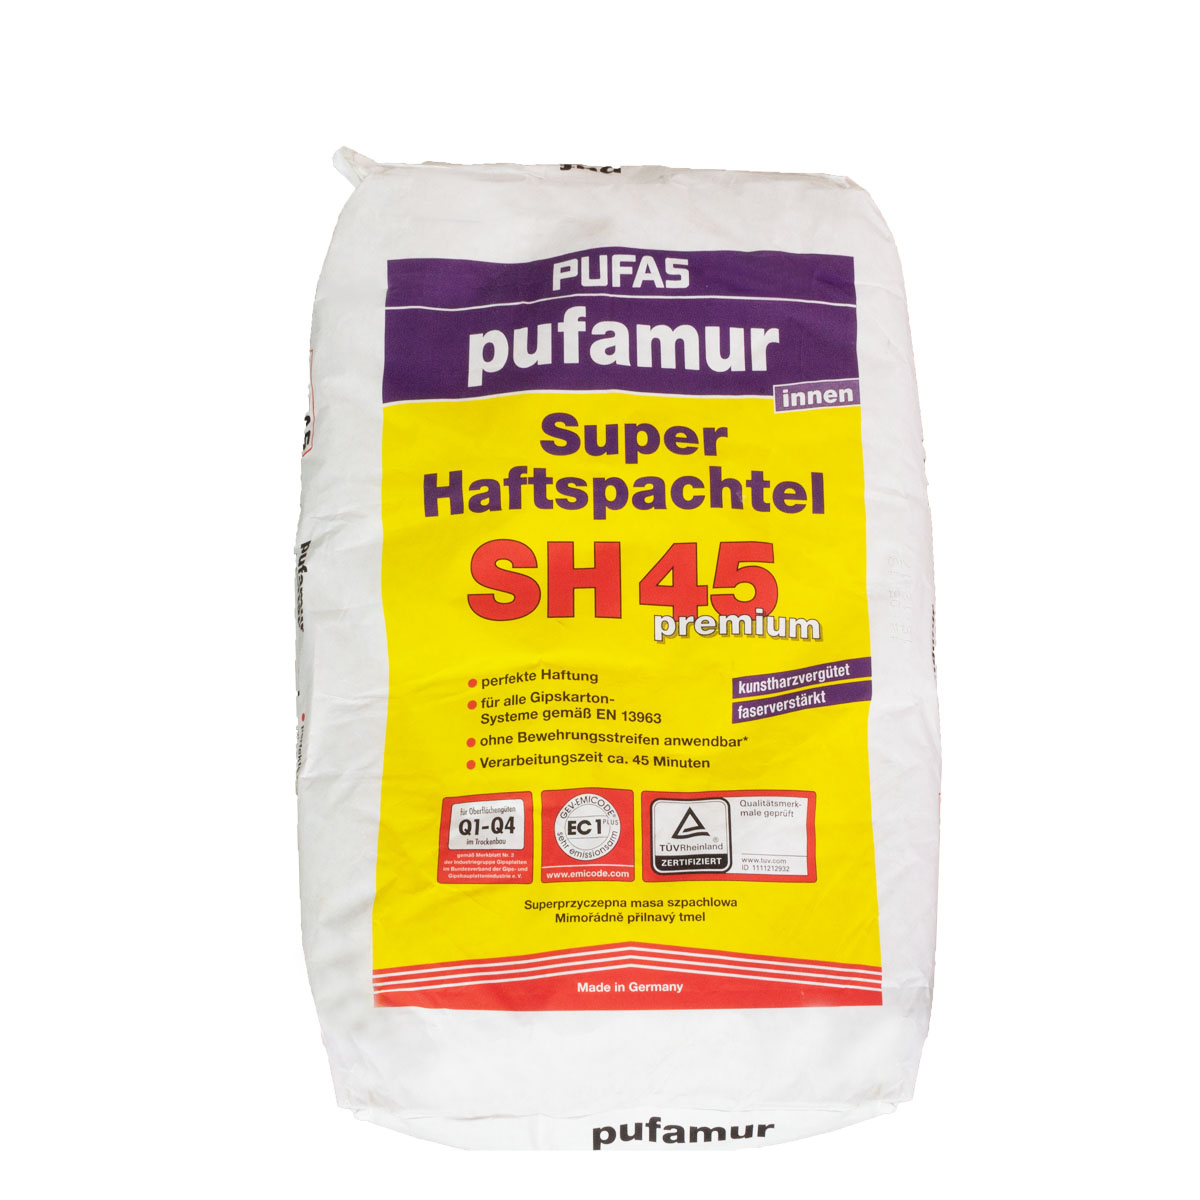 Pufas Pufamur Super Haftspachtel SH45 5kg kunstharzvergütet, Q1-Q4